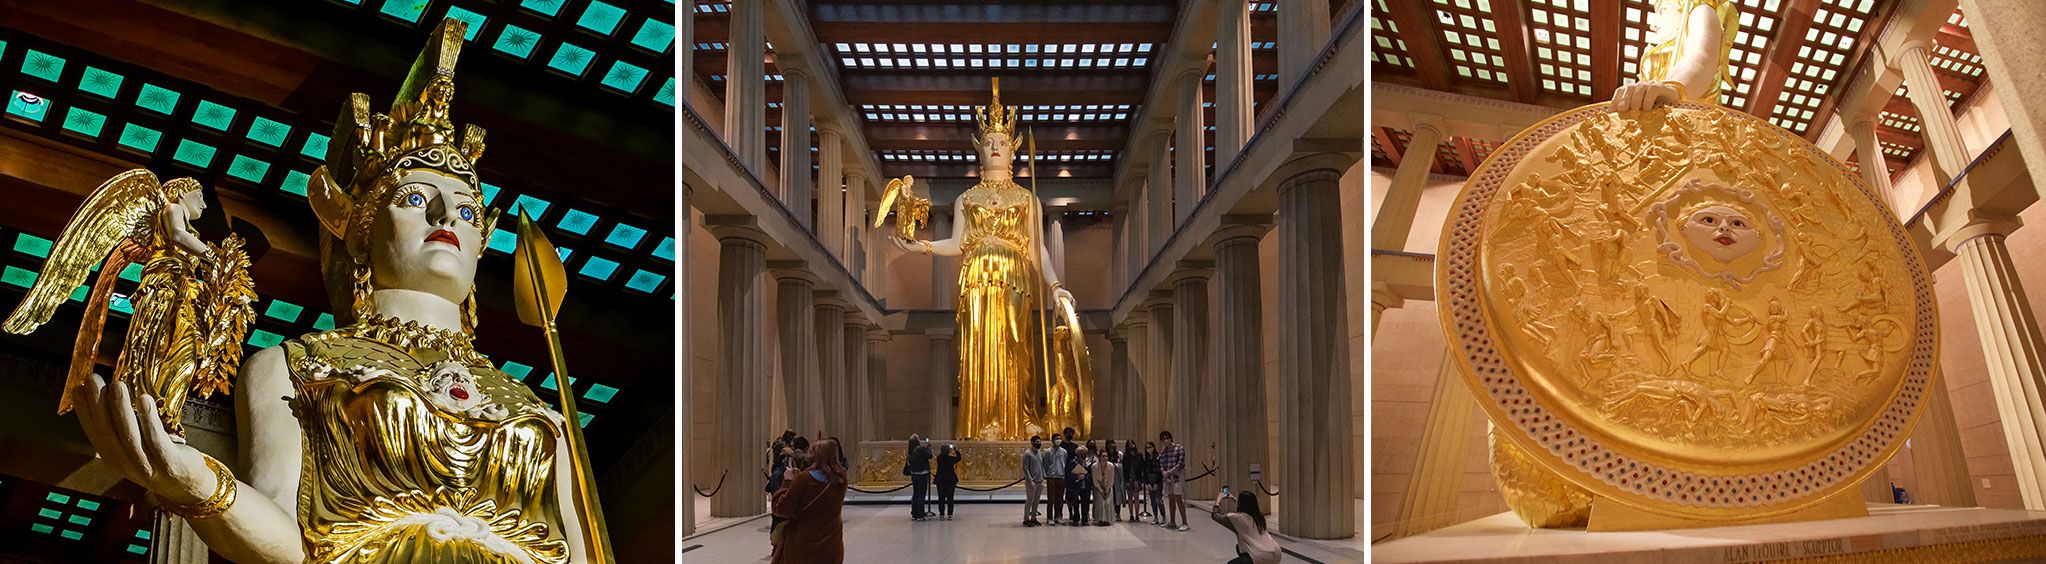 Athena Statue at the Parthenon